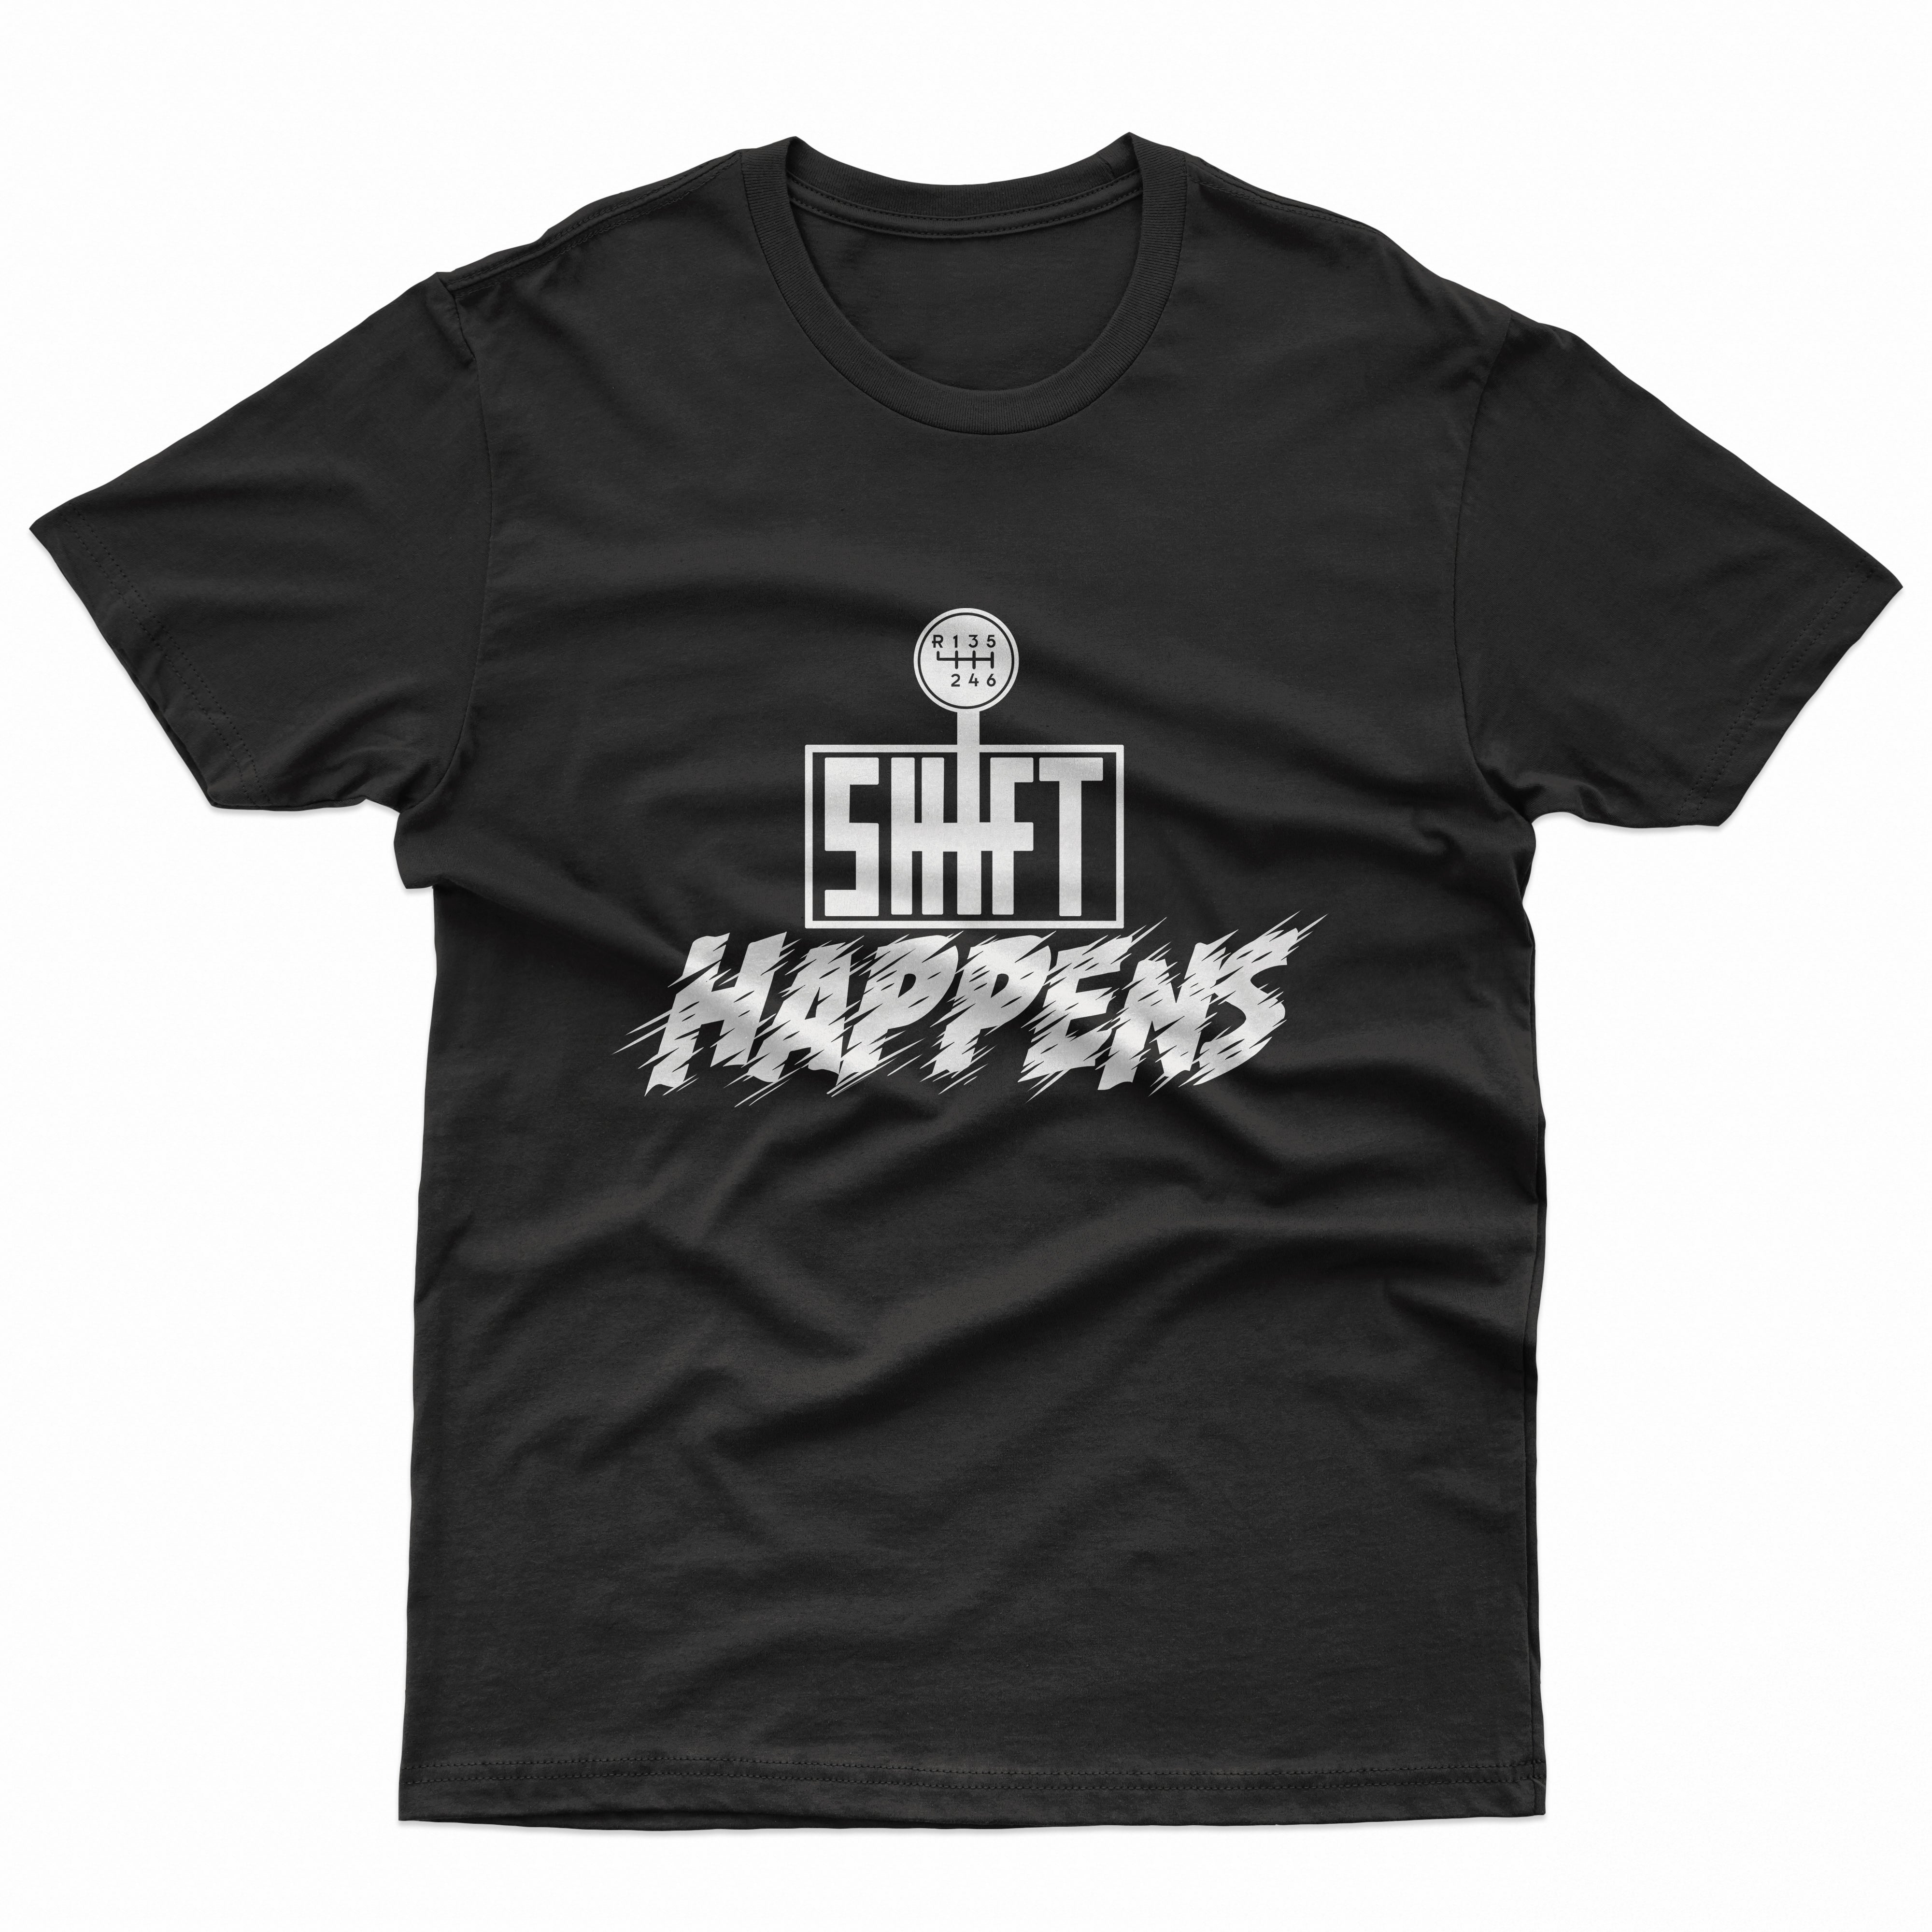 Shift Happens T Shirt